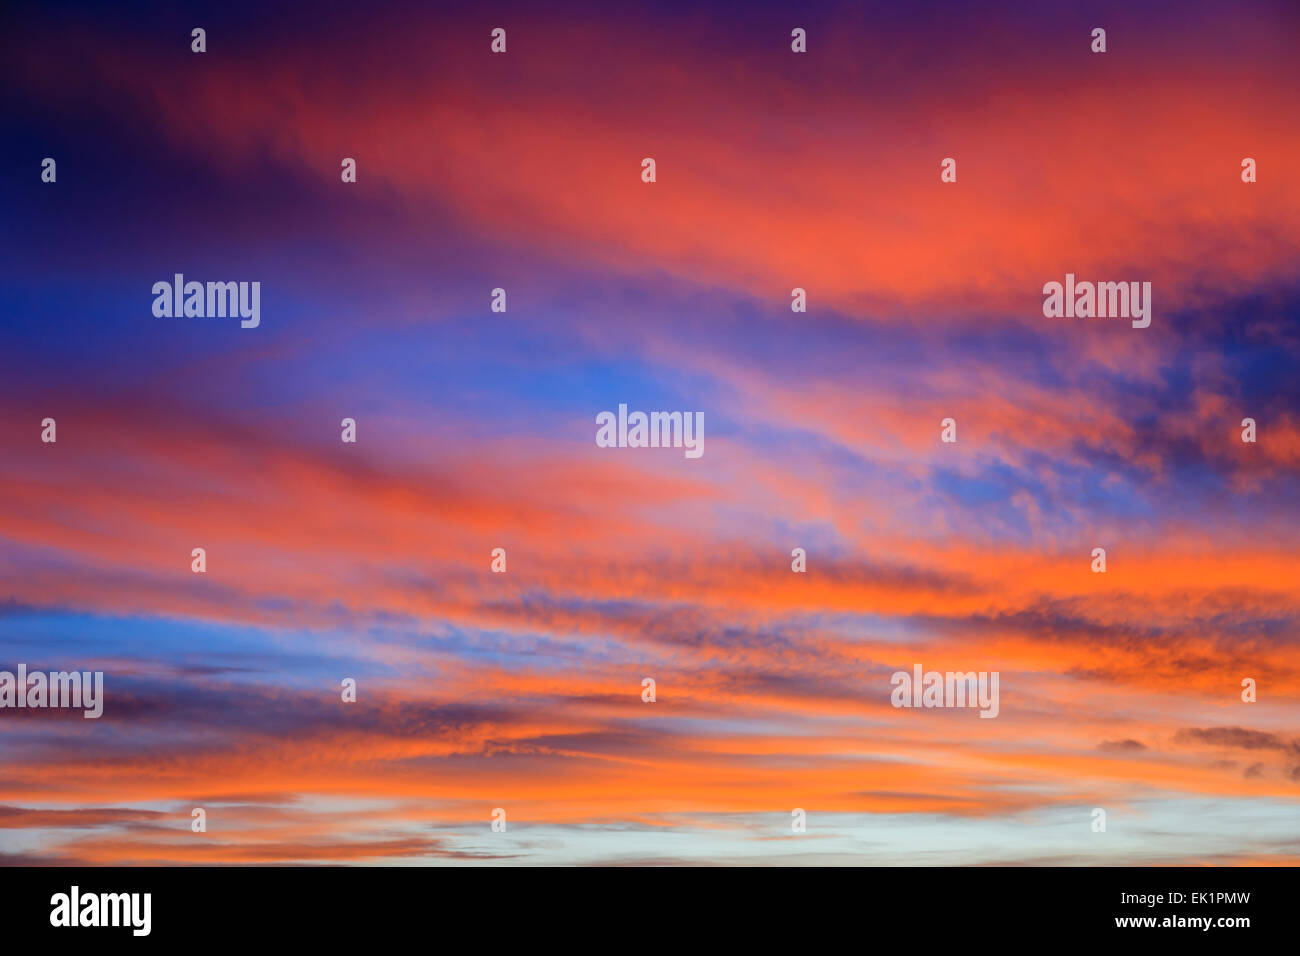 Feurige September Abends Skyscape mit Wolken von den roten Sonnenuntergang vor einem dunklen blauen Himmel beleuchtet. England, UK, Großbritannien Stockfoto